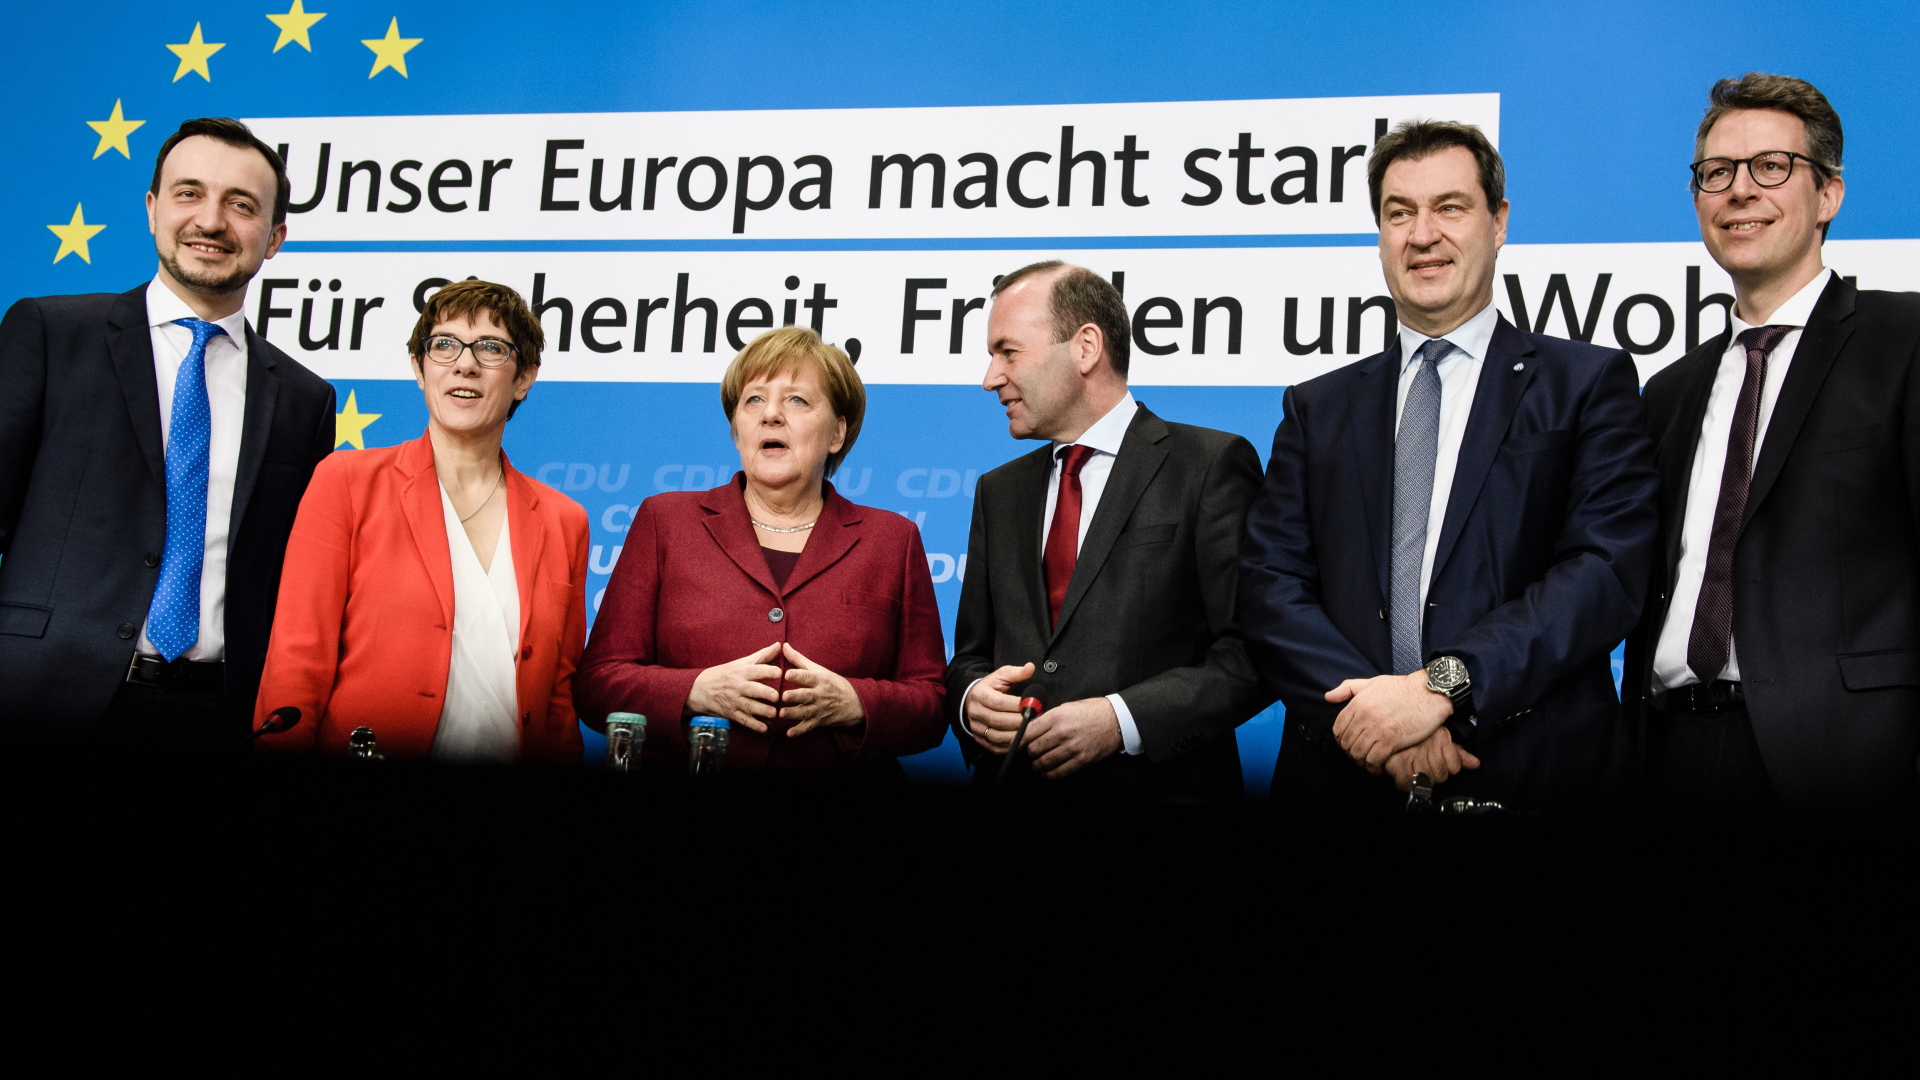 Paul Ziemiak, Annegret Kramp-Karrenbauer, Angela Merkel, Manfred Weber, Markus Söder und Markus Blume bei der Präsentation des Wahlprogramms für die EU-Wahl.